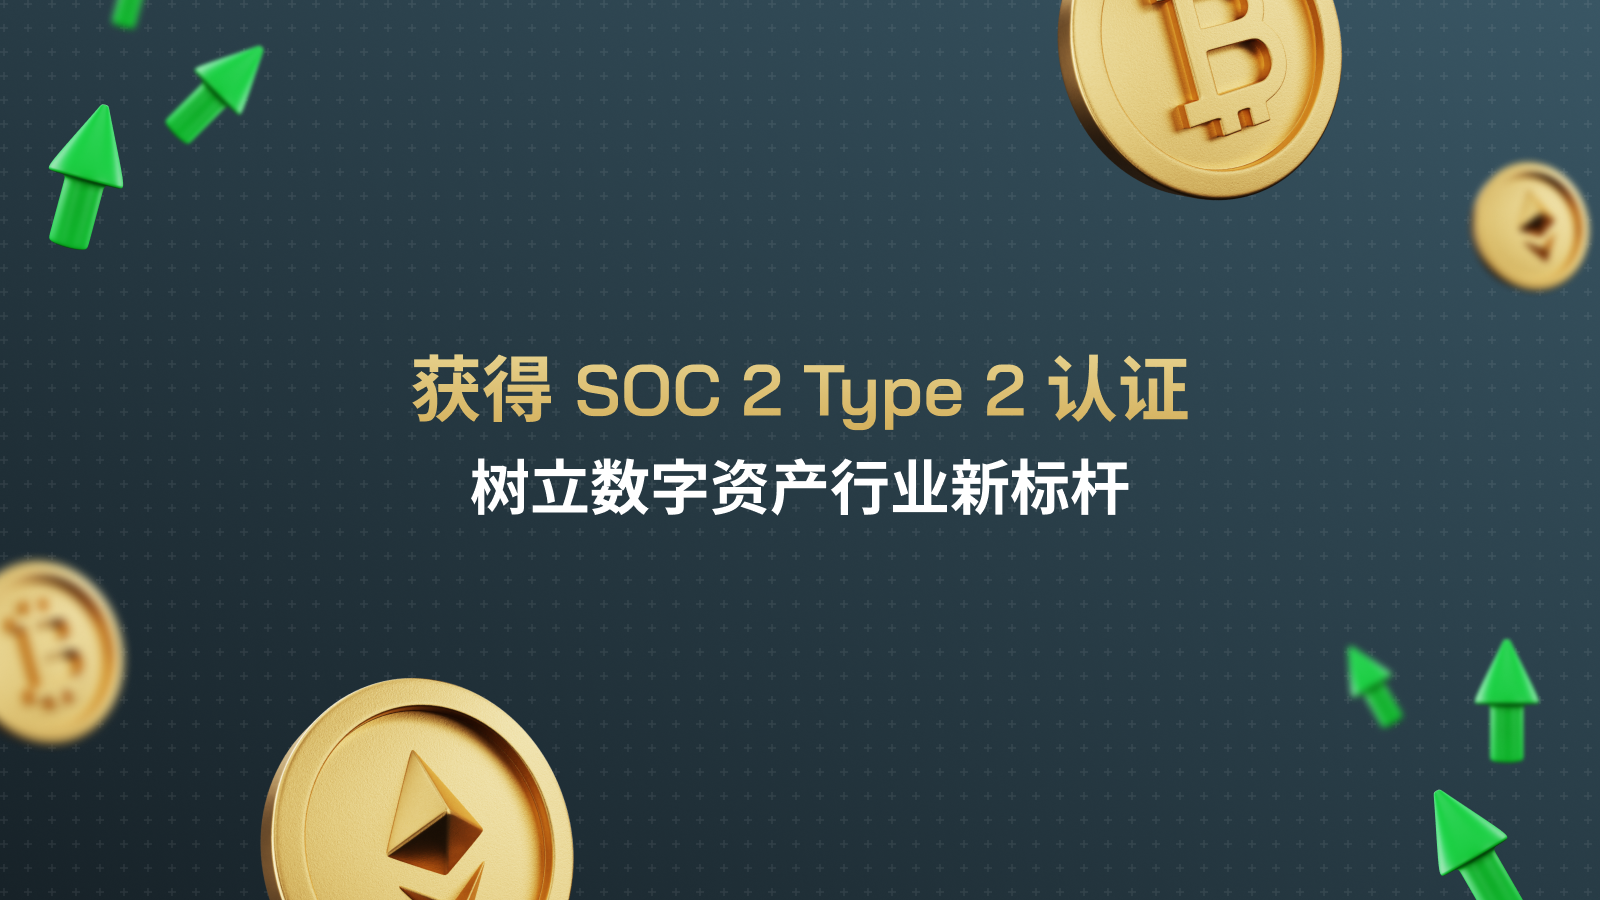 soc 2 type 2 - Web Banner v1.0 (SC)